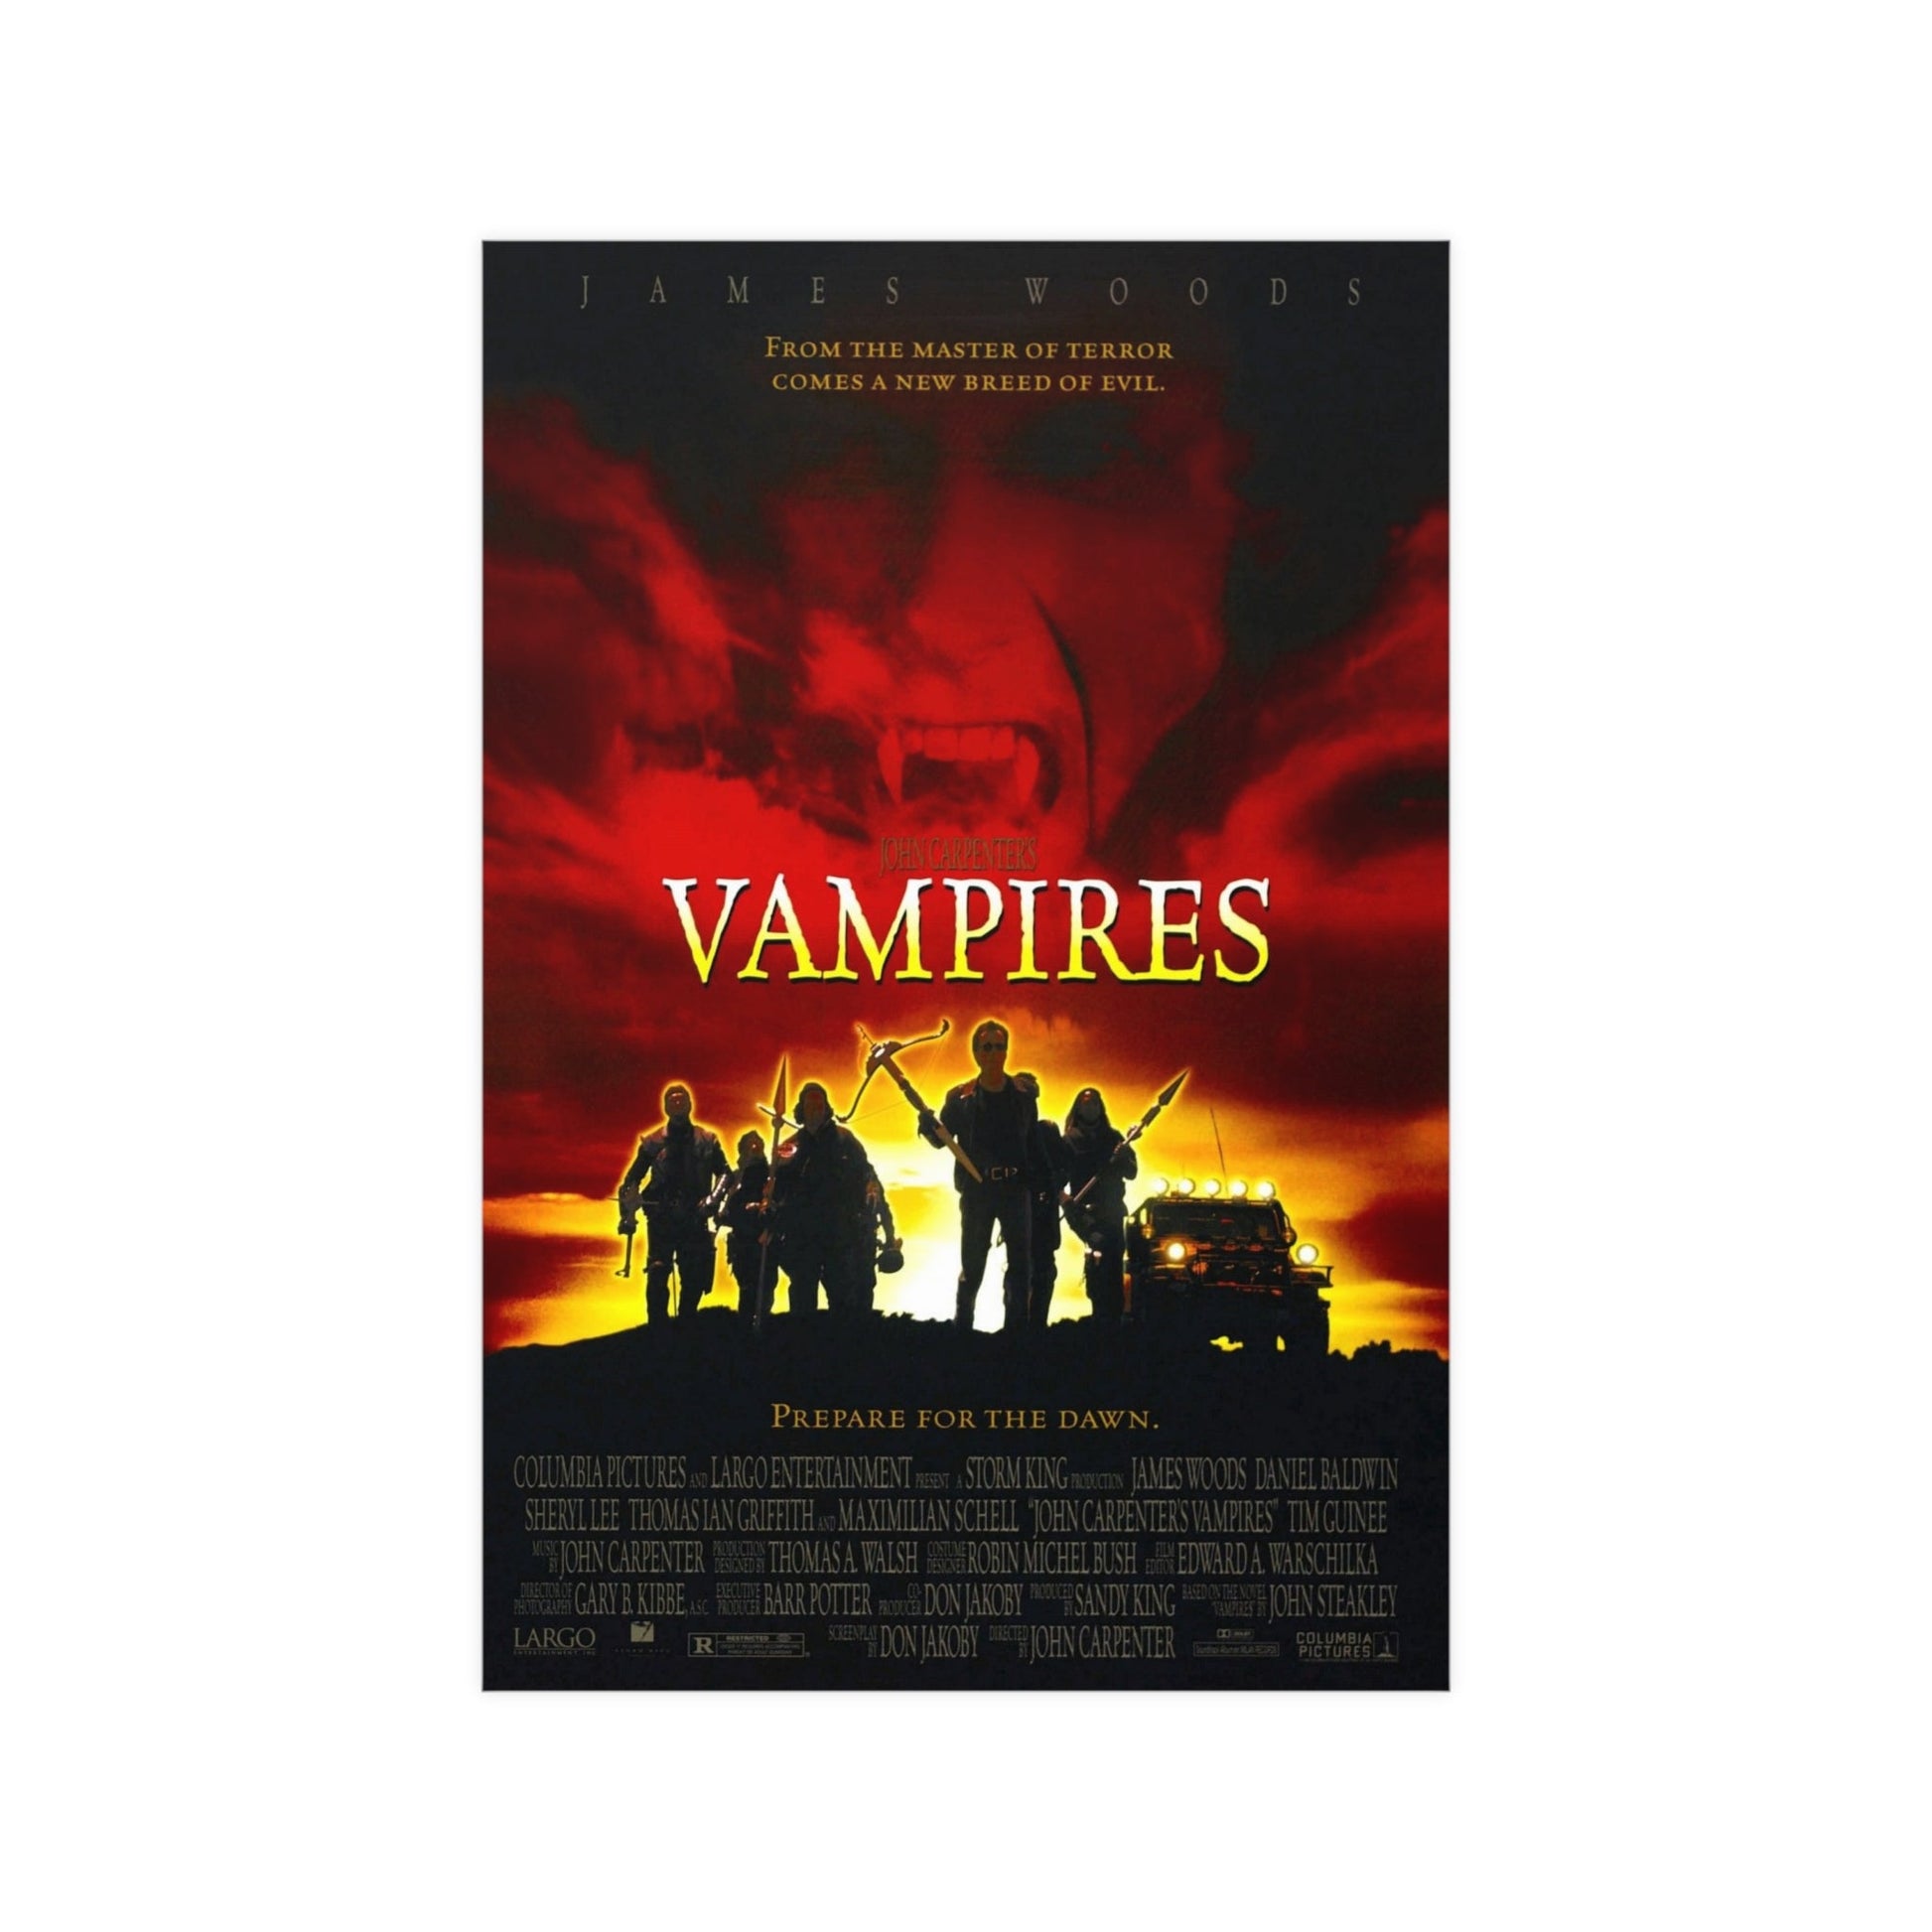 JOHN CARPENTER'S “VAMPIRES” (1998)